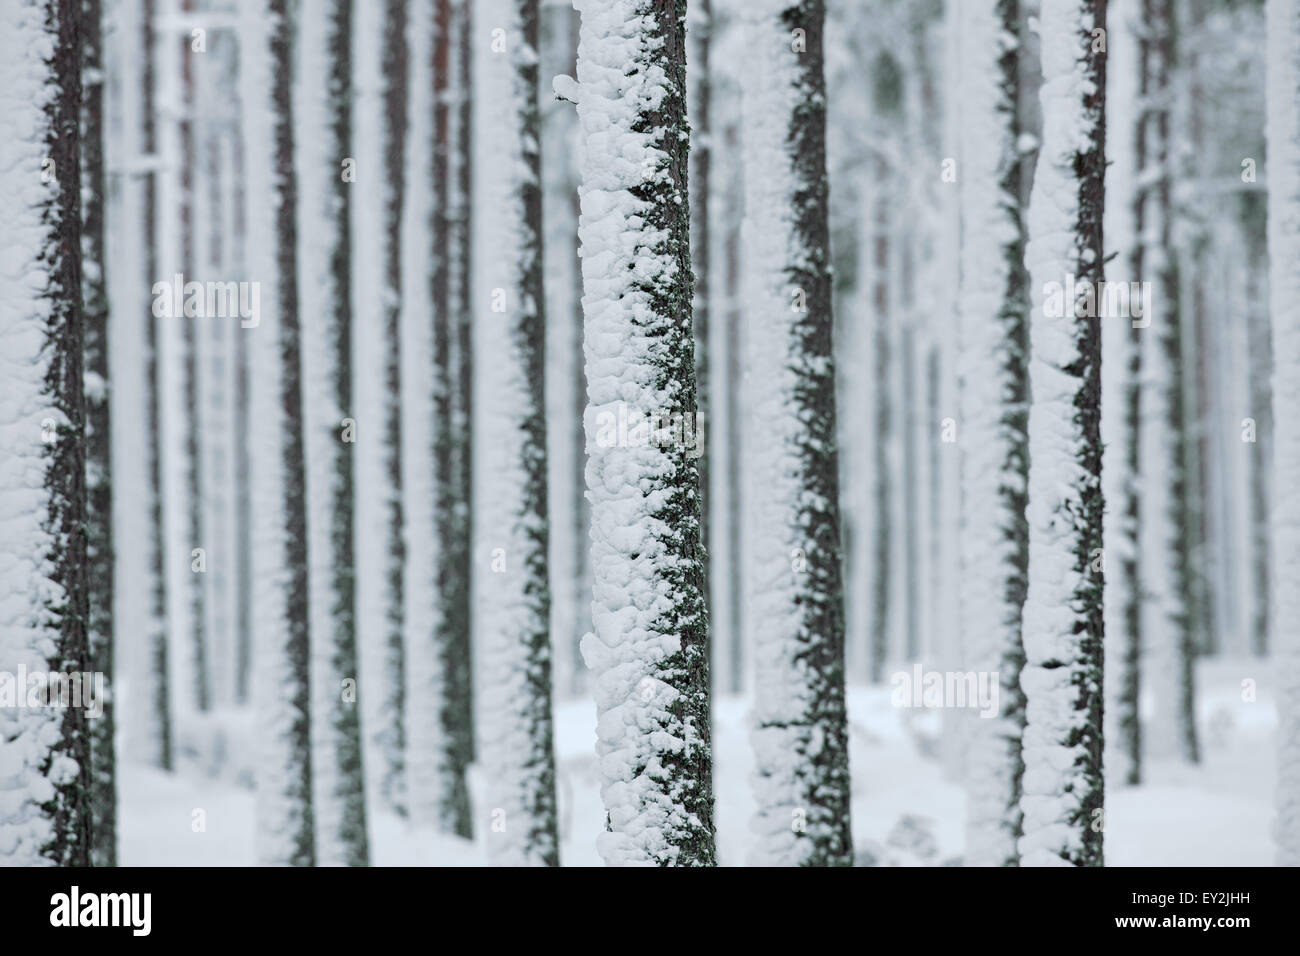 Di pino silvestre (Pinus sylvestris L.) tronchi di alberi nella foresta di conifere coperte di neve in inverno Foto Stock